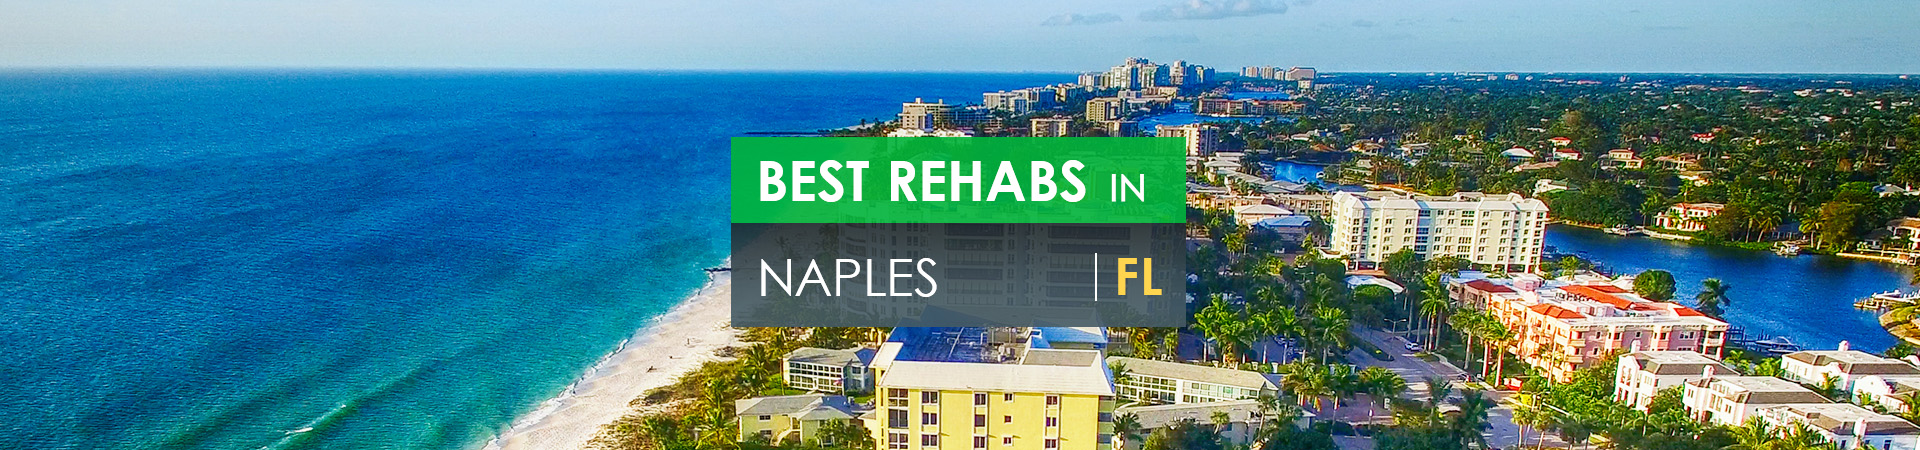 Best rehabs in Naples, FL